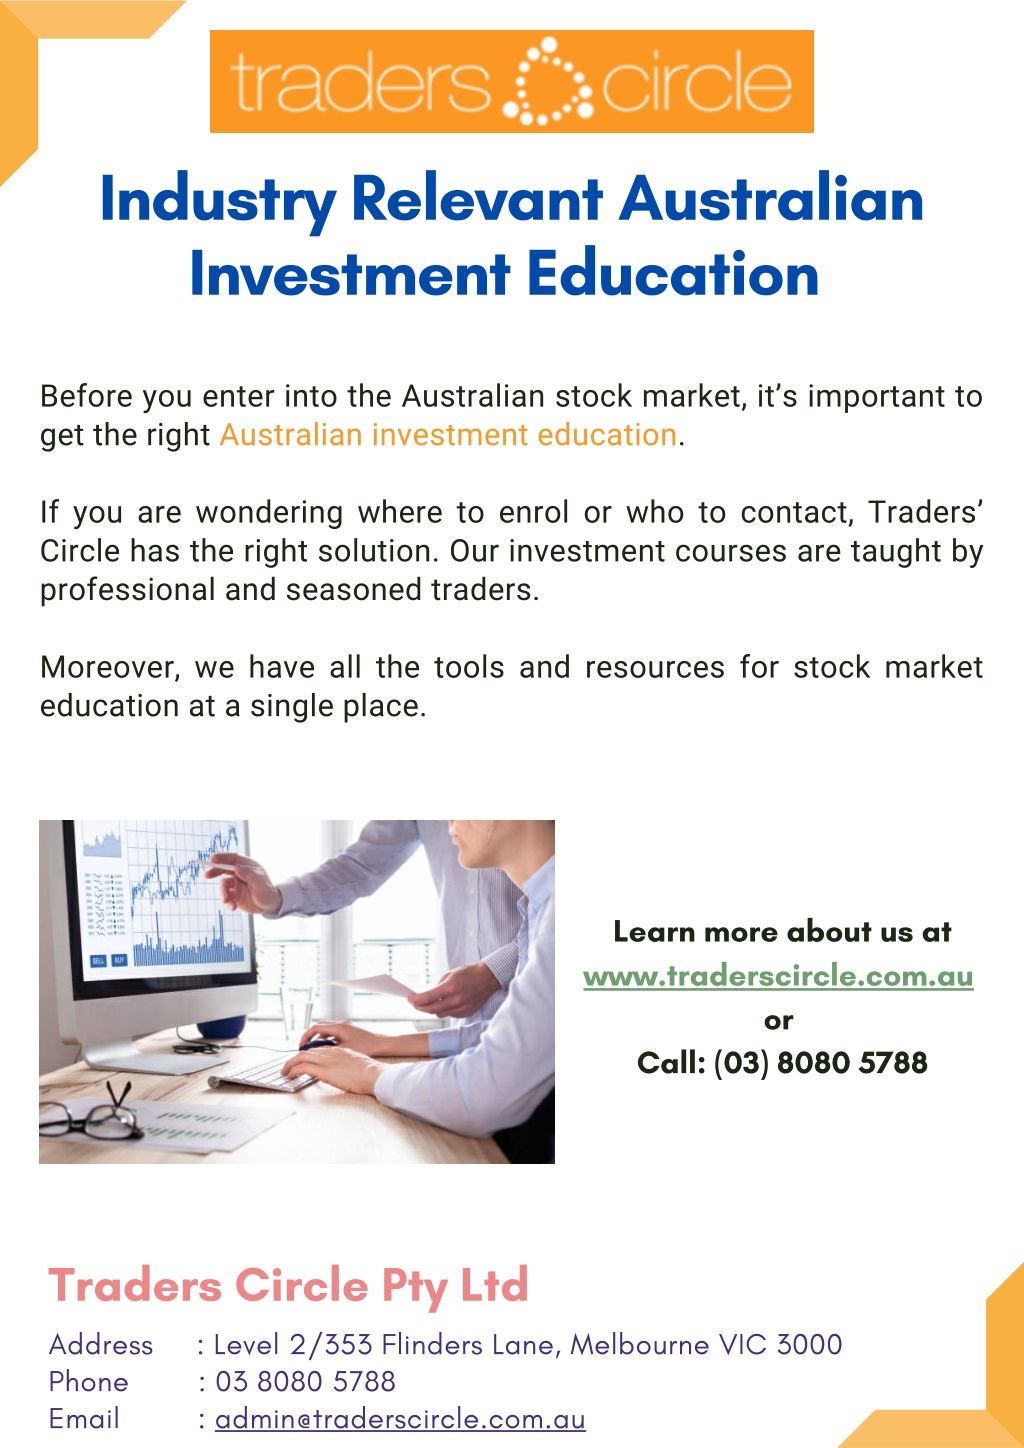 https://image5.slideserve.com/10986287/industry-relevant-australian-investment-education-l.jpg